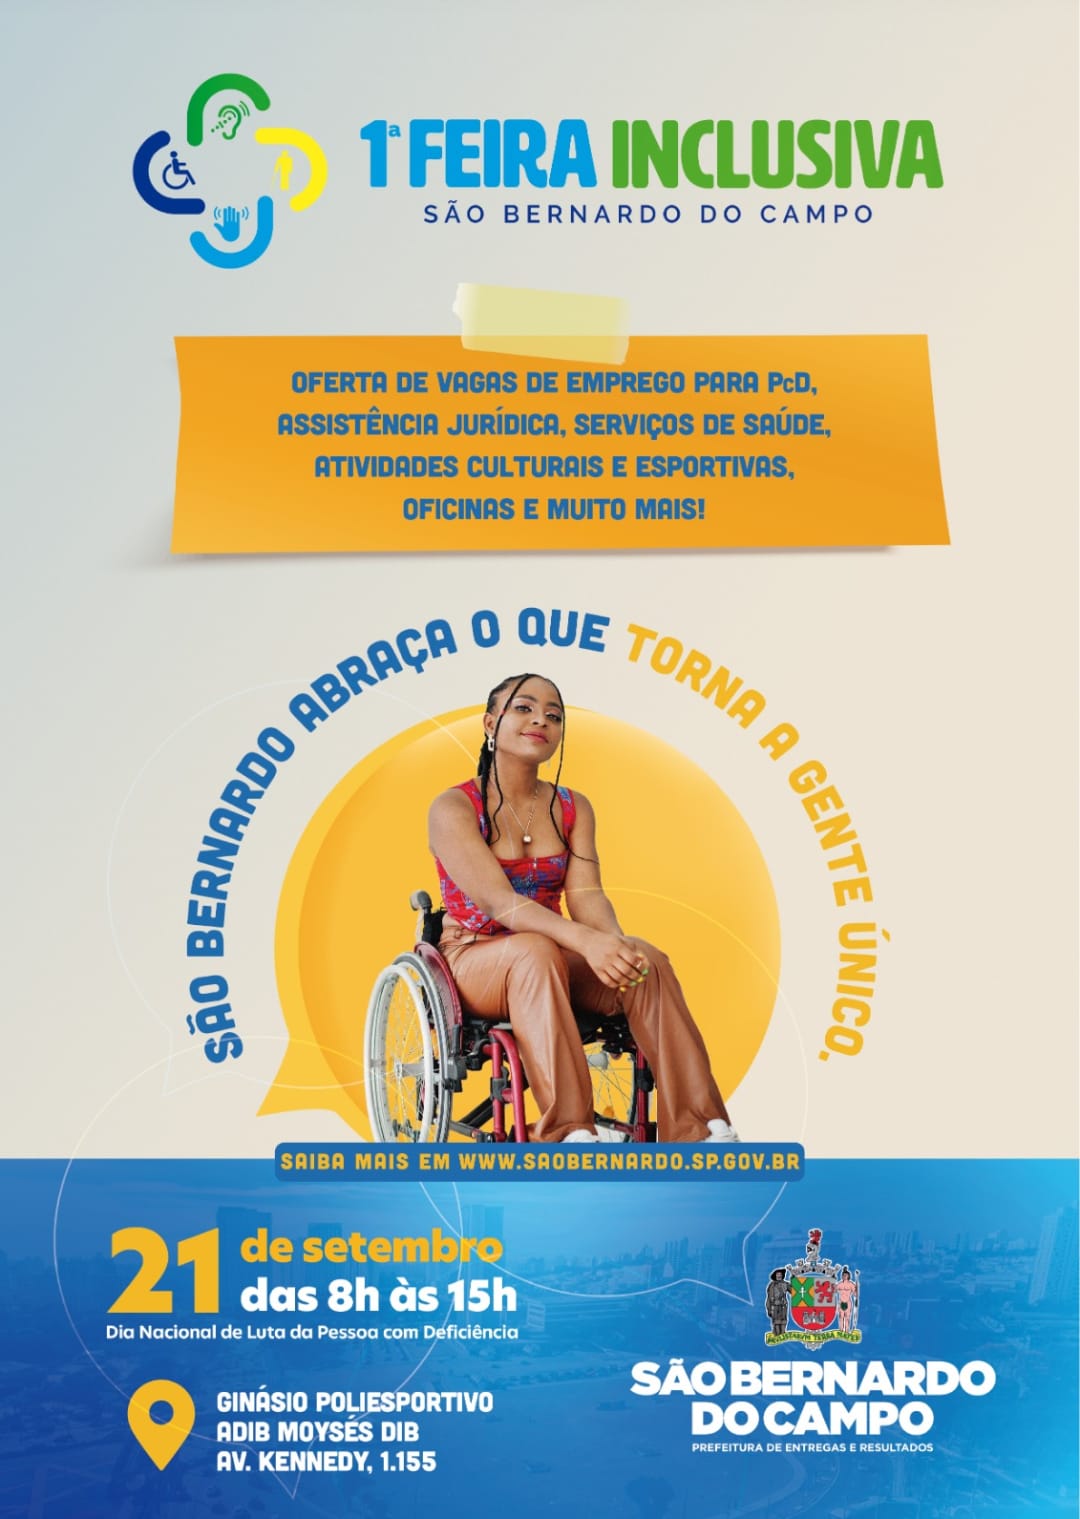 São Bernardo do Campo/SP promove Feira Inclusiva com vagas de emprego e serviços para pessoas com deficiências